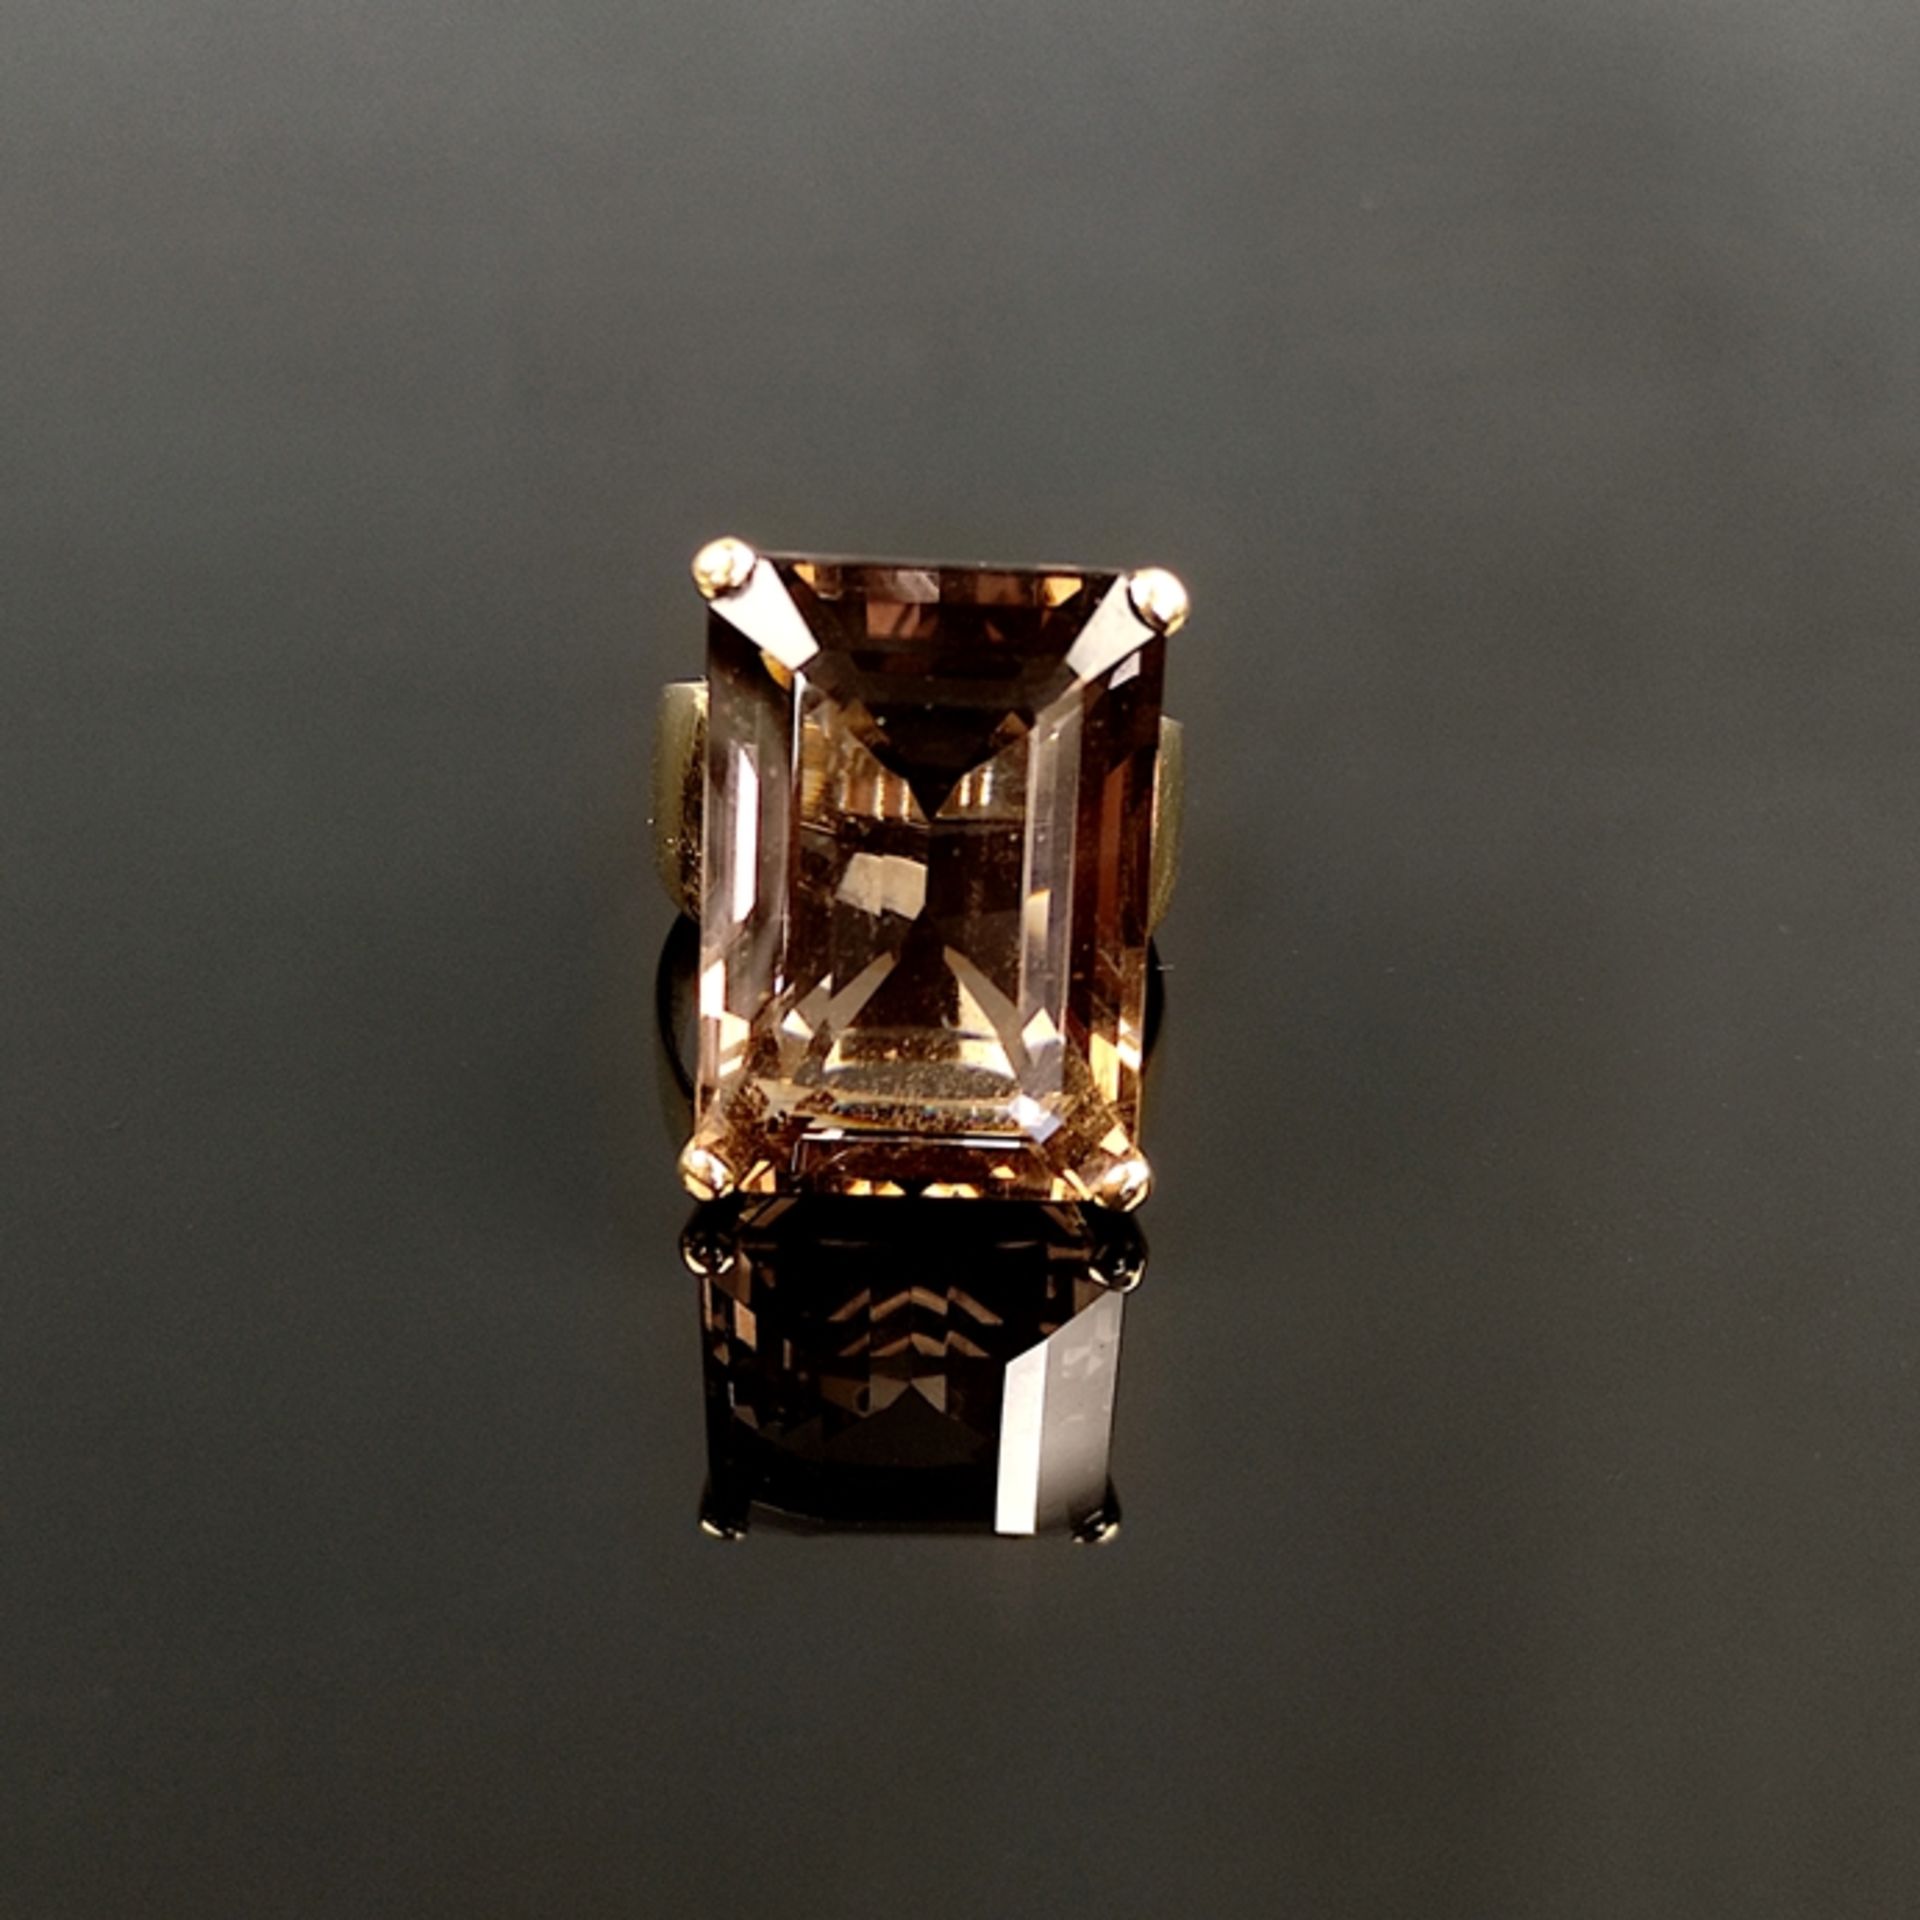 Großer Rauchquarz-Ring, 750/18K Gelbgold, Gesamtgewicht 18,25g, großer facettierter Rauchquarz, sch - Bild 2 aus 2